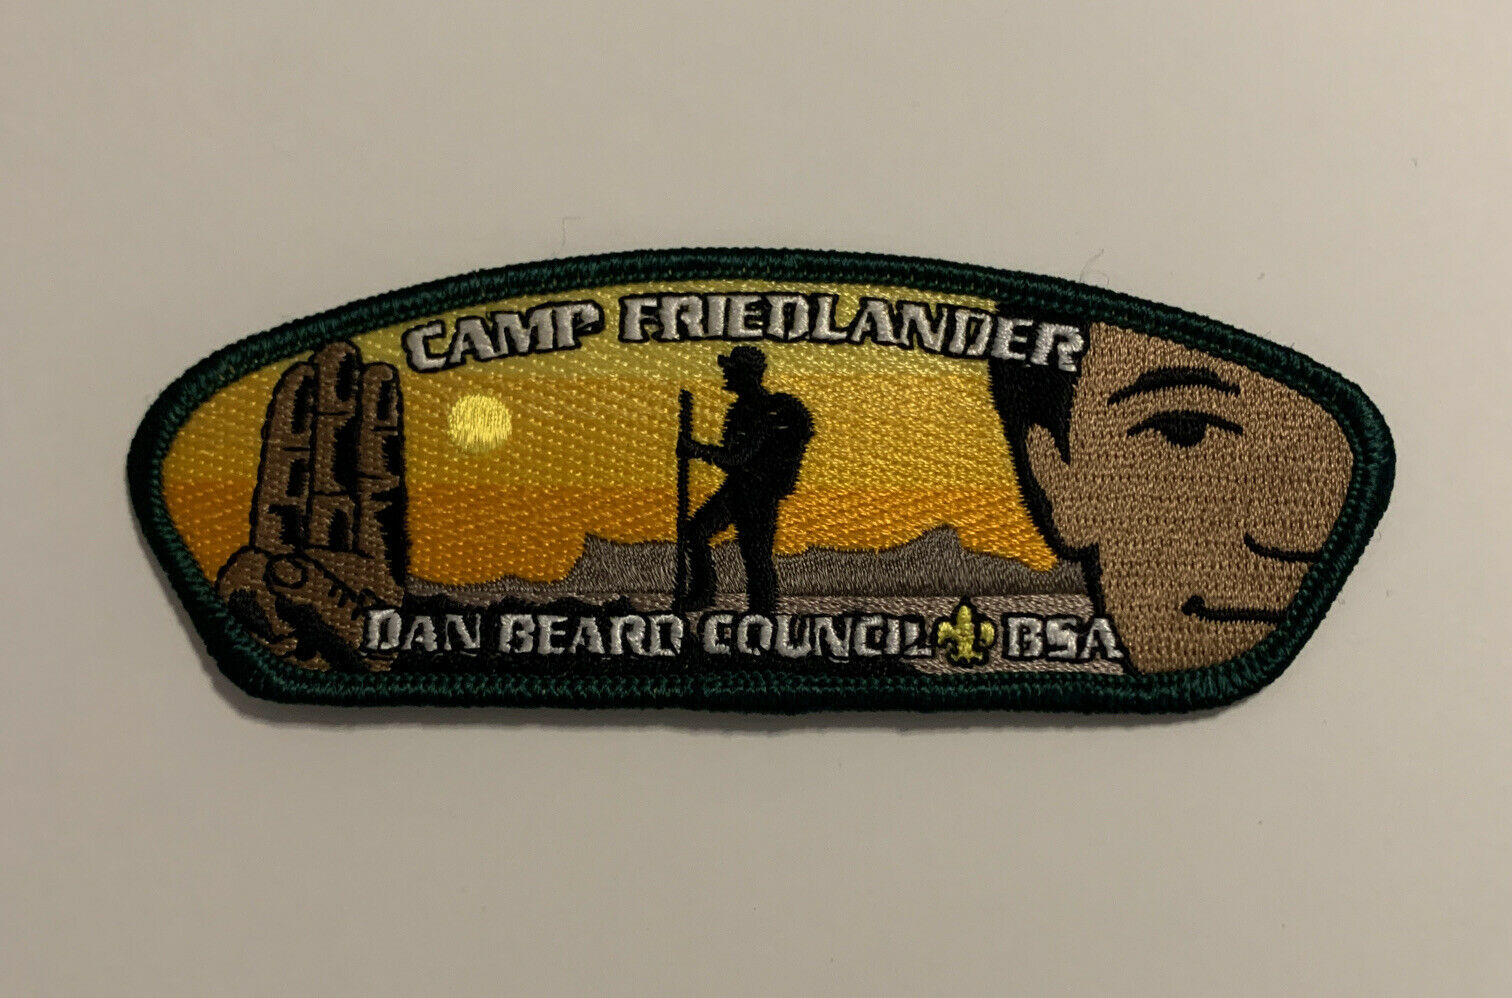 Dan Beard Council Bsa Camp Friedlander Csp Mint